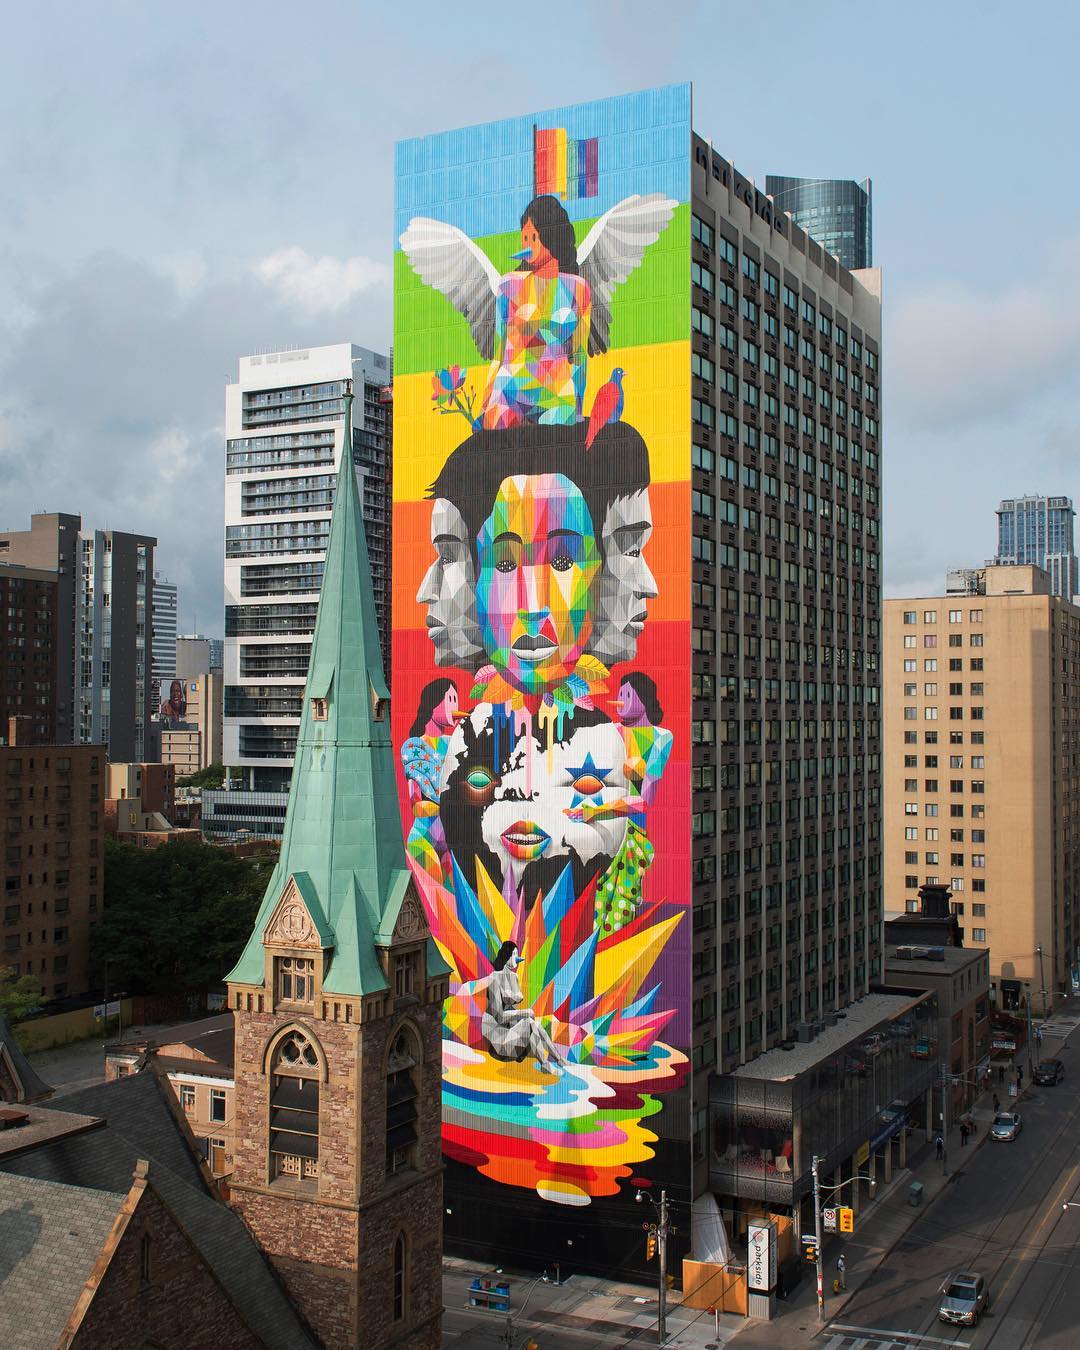 mural in Toronto by artist Okuda San Miguel.